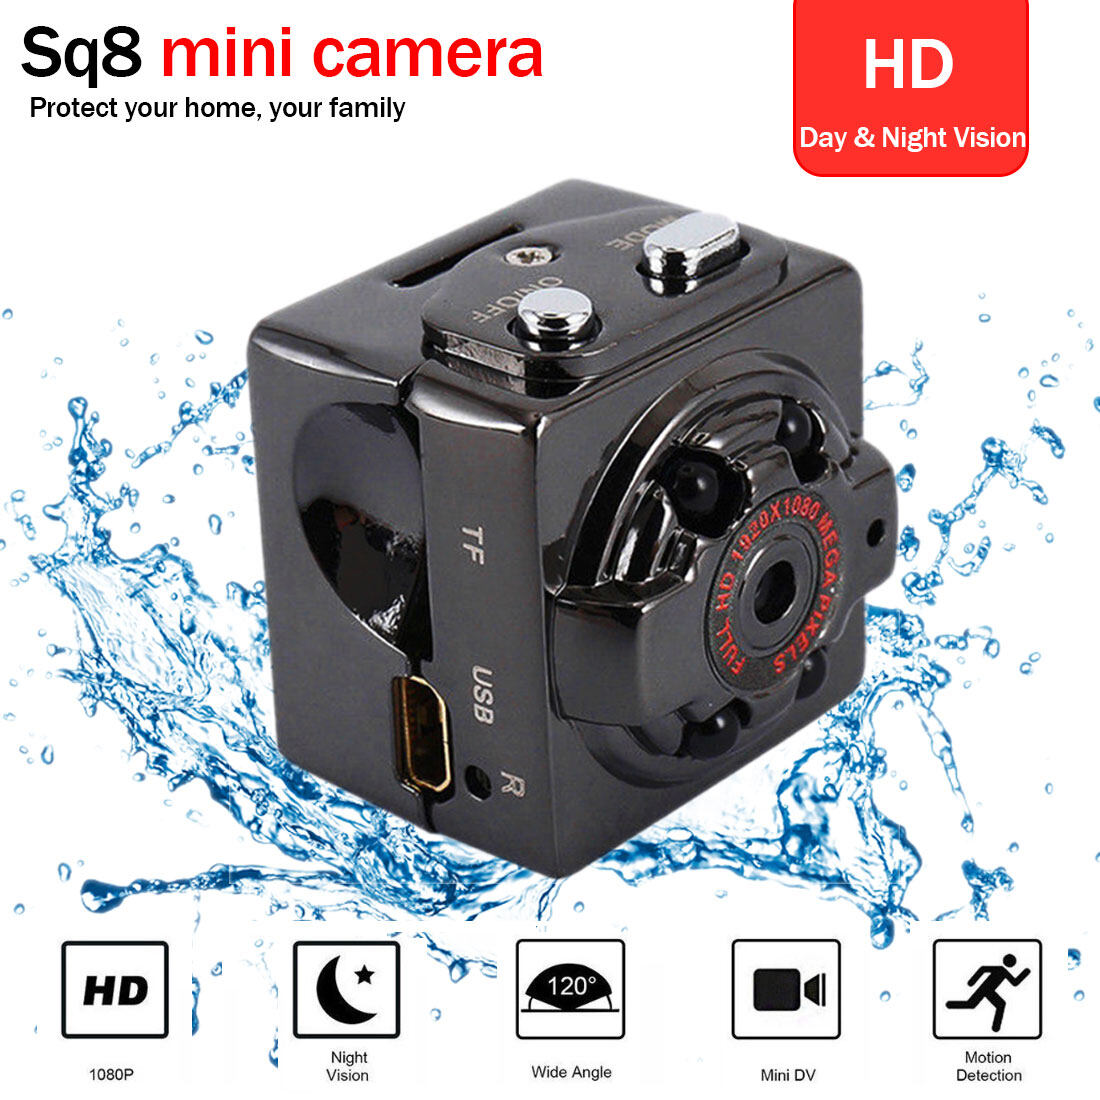 【Worth-Buy】 Camera Thông Minh HD Mini SQ8 Camera Không Dây Chế Độ Ghi Hình Kép 1080P 720P Camera Quan Sát Ban Đêm Camera Mini Siêu Nhỏ DVR